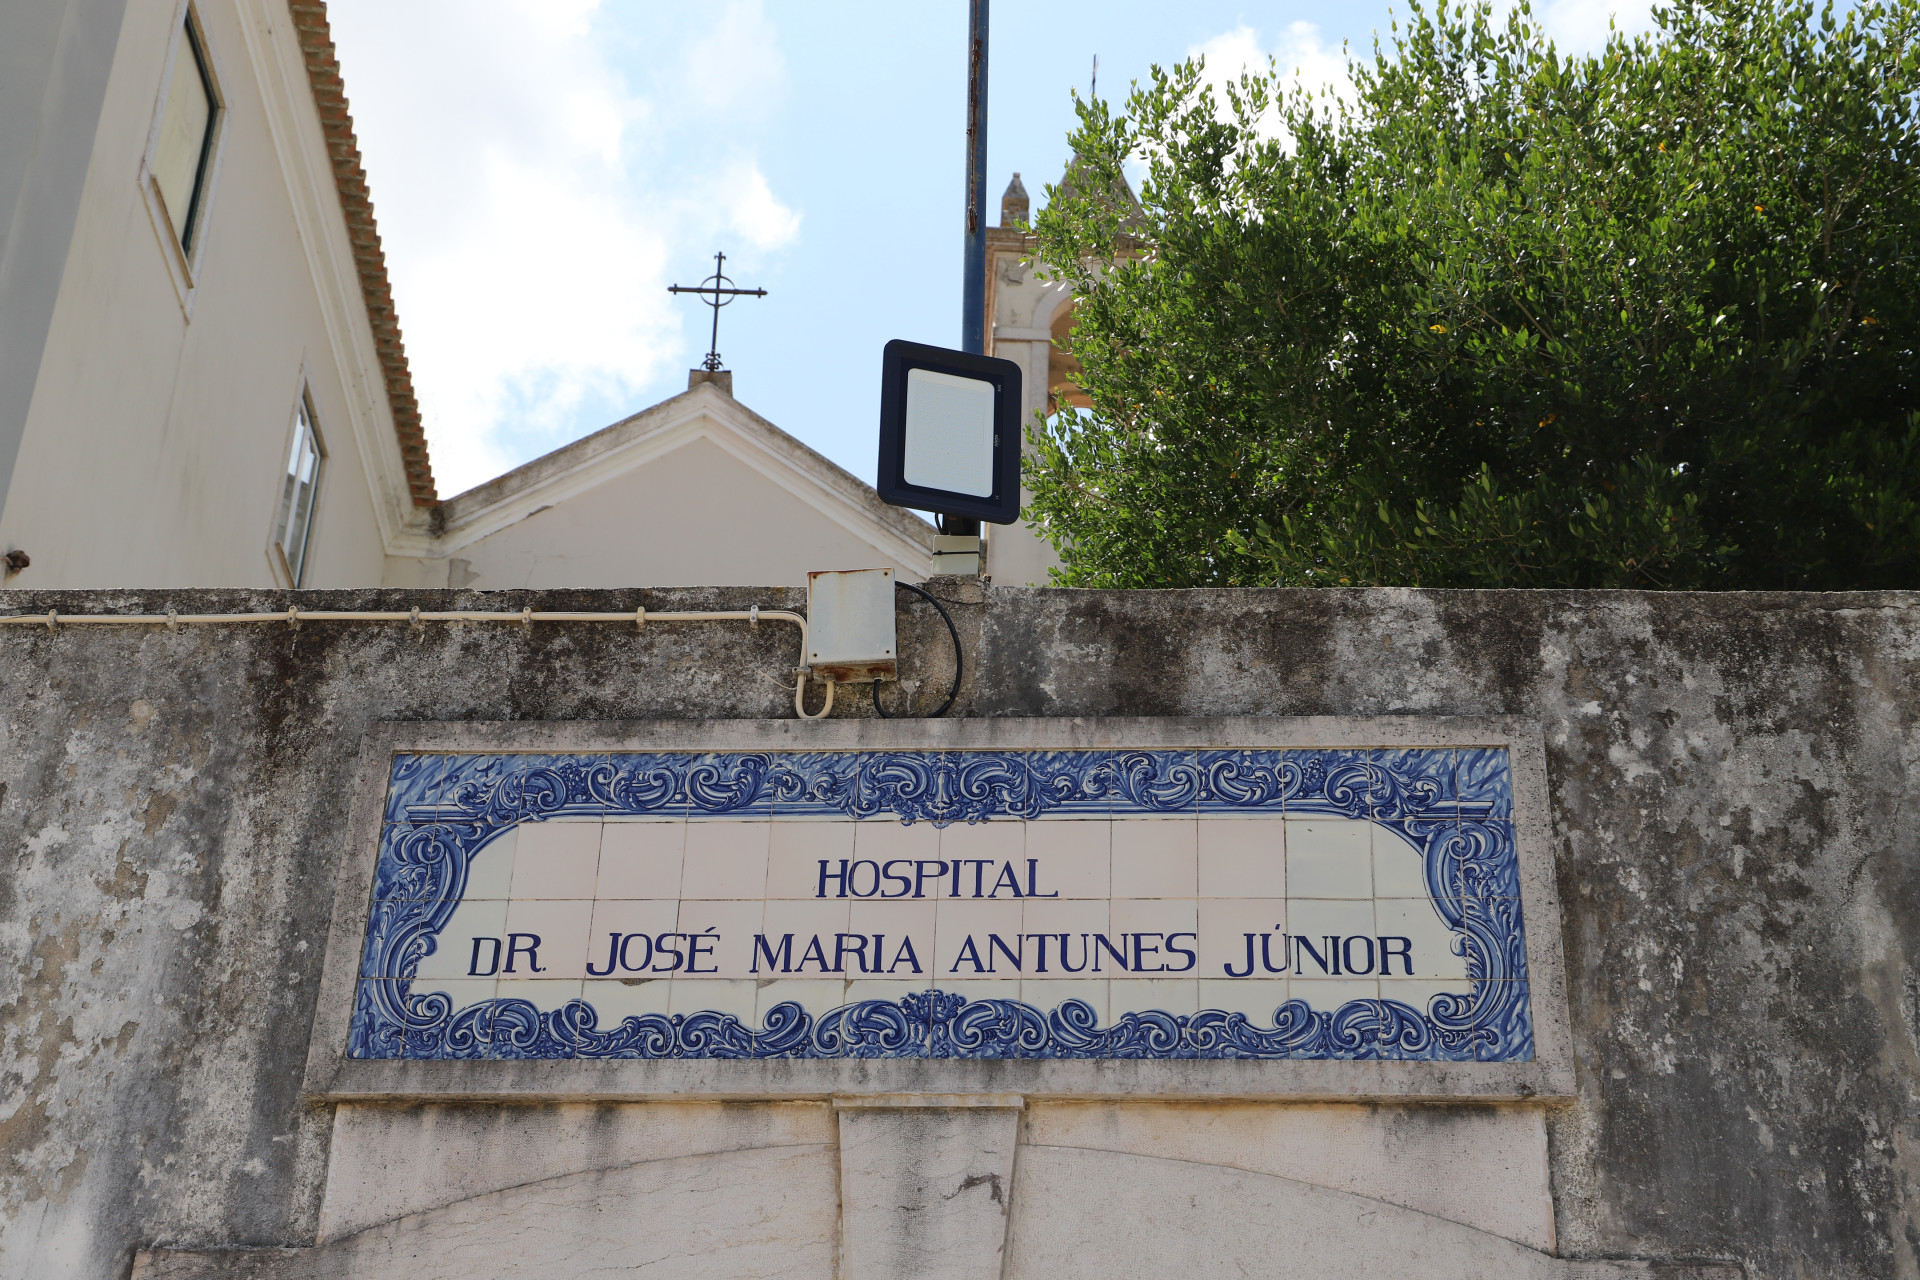 placa identificativa do antigo hospital de josé maria antunes júnior